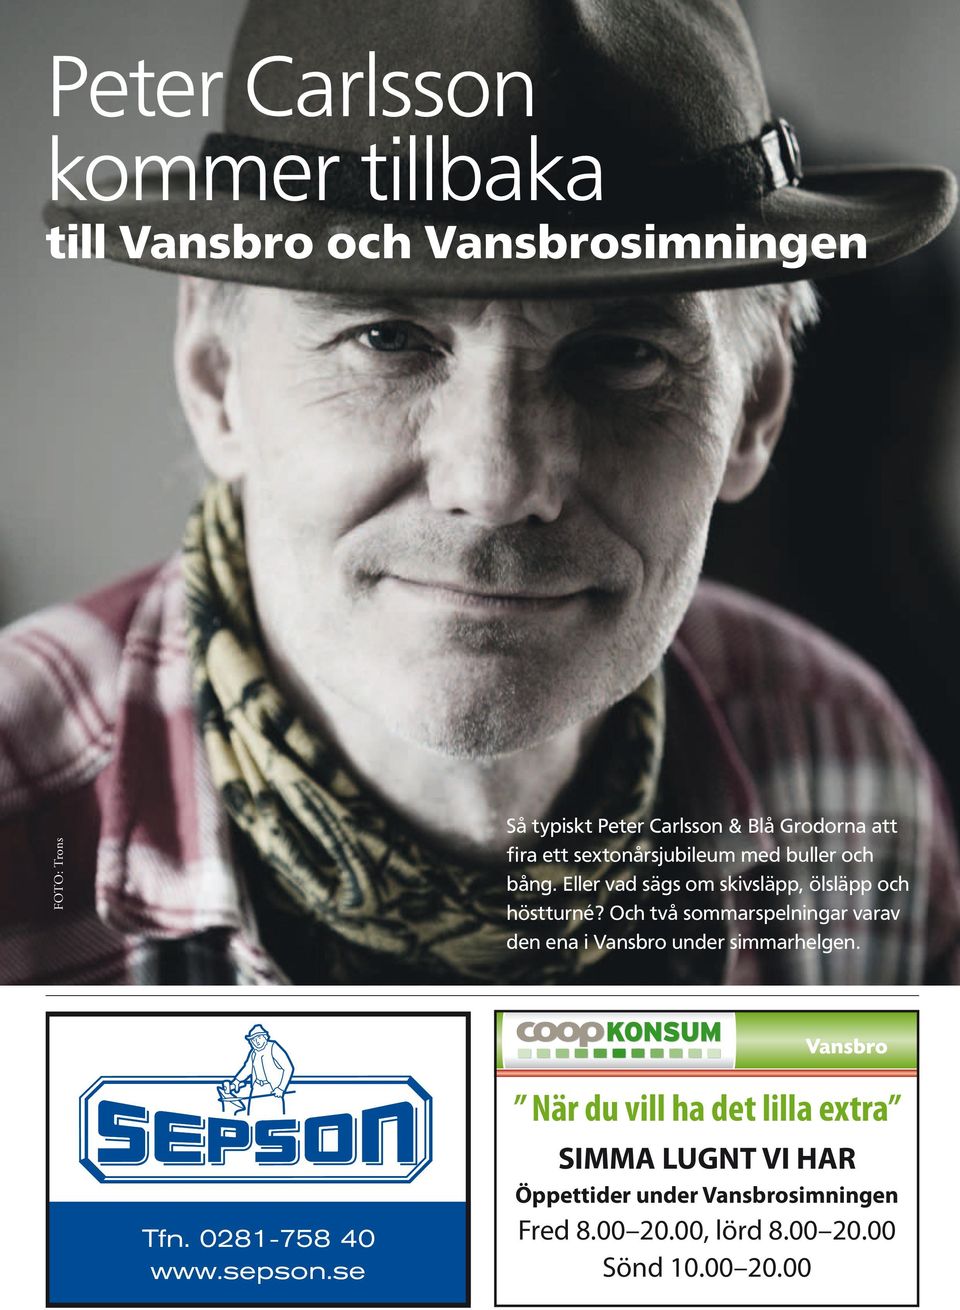 Priserna gäller endast hos Coop Konsum Vansbro t o m 14/12 2008 eller så långt lagret räcker. Vansbro Tfn. 0281-758 40 www.sepson.